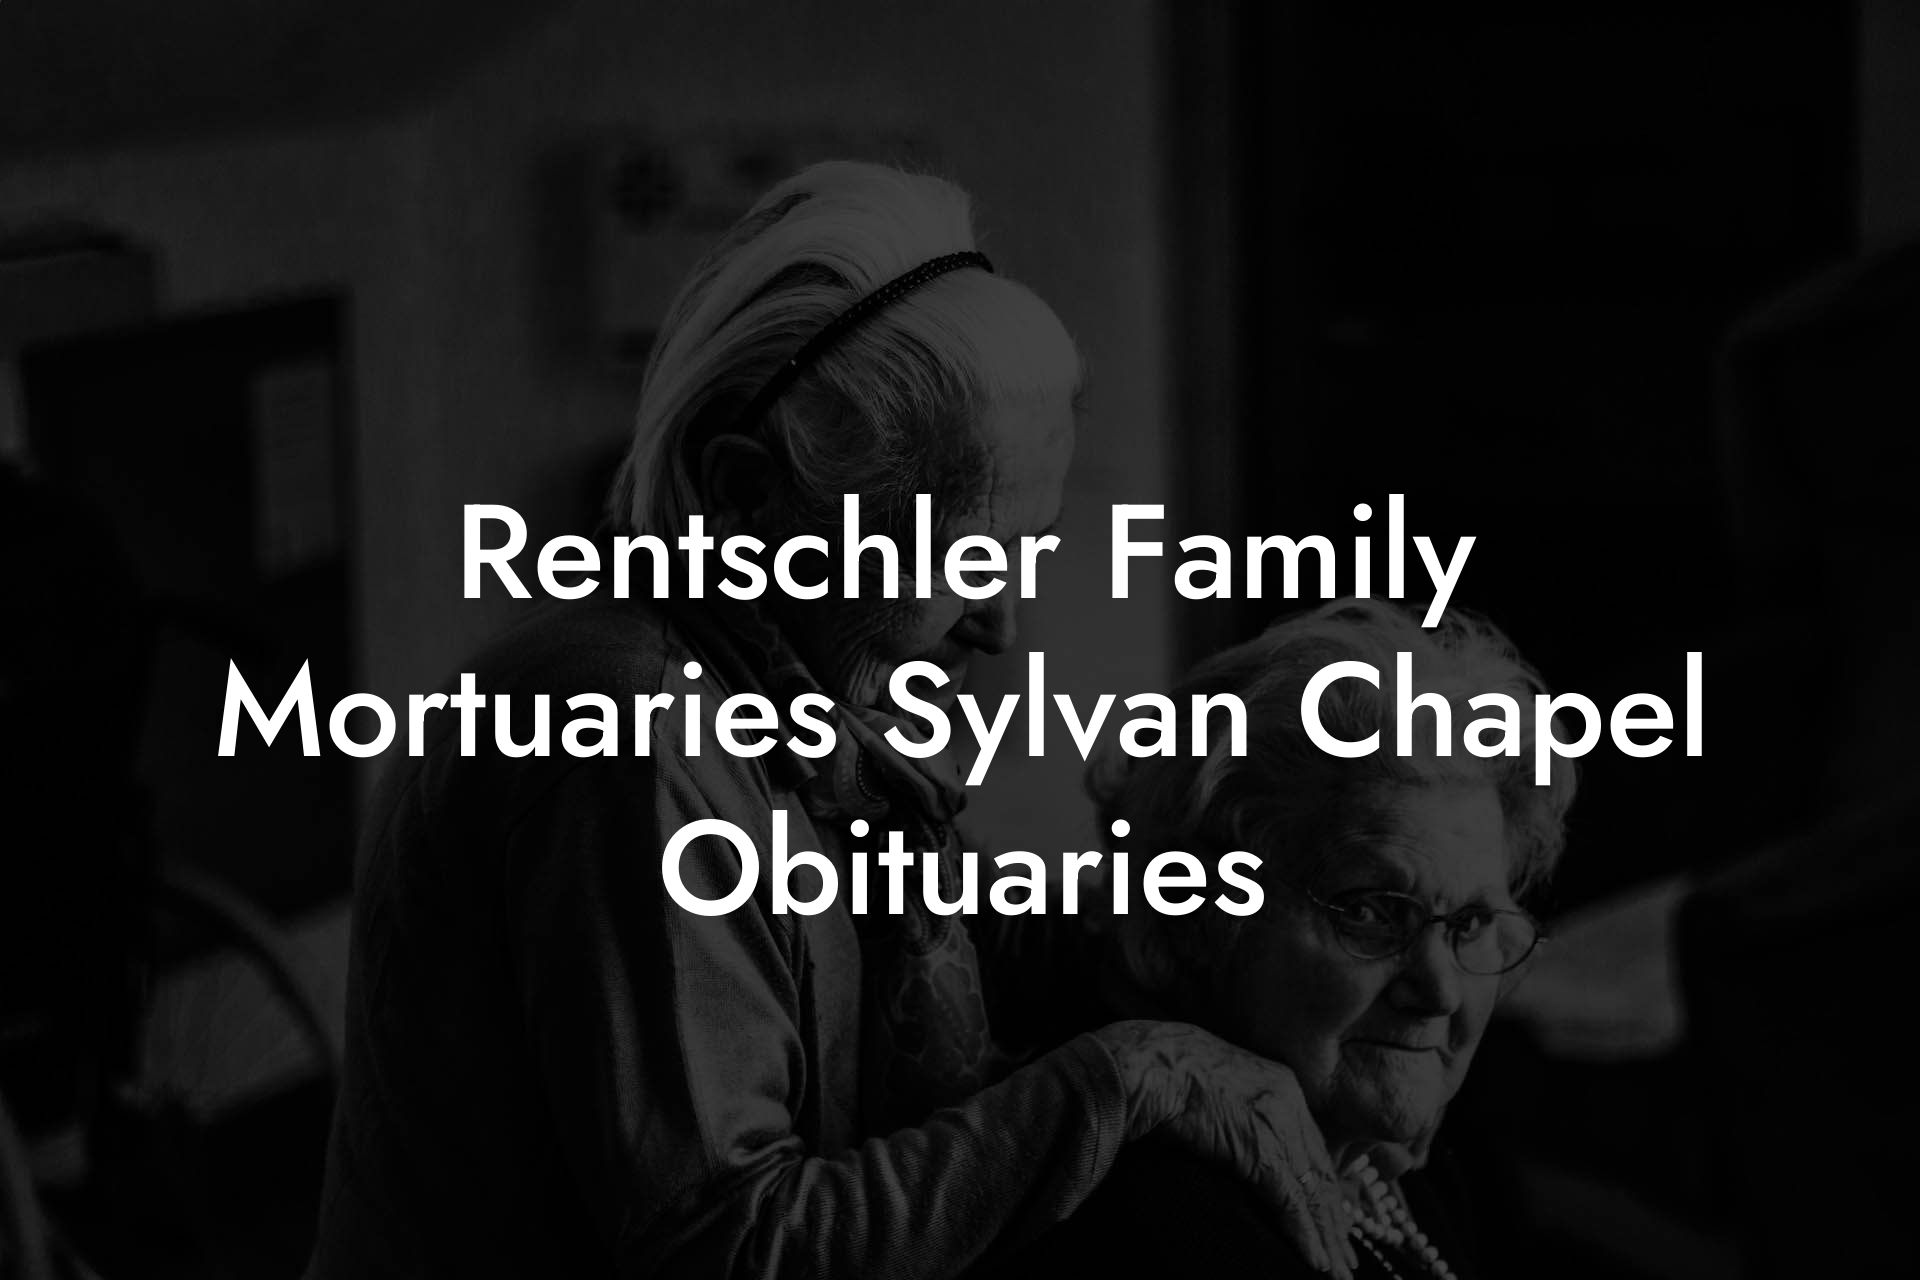 Rentschler Family Mortuaries Sylvan Chapel Obituaries